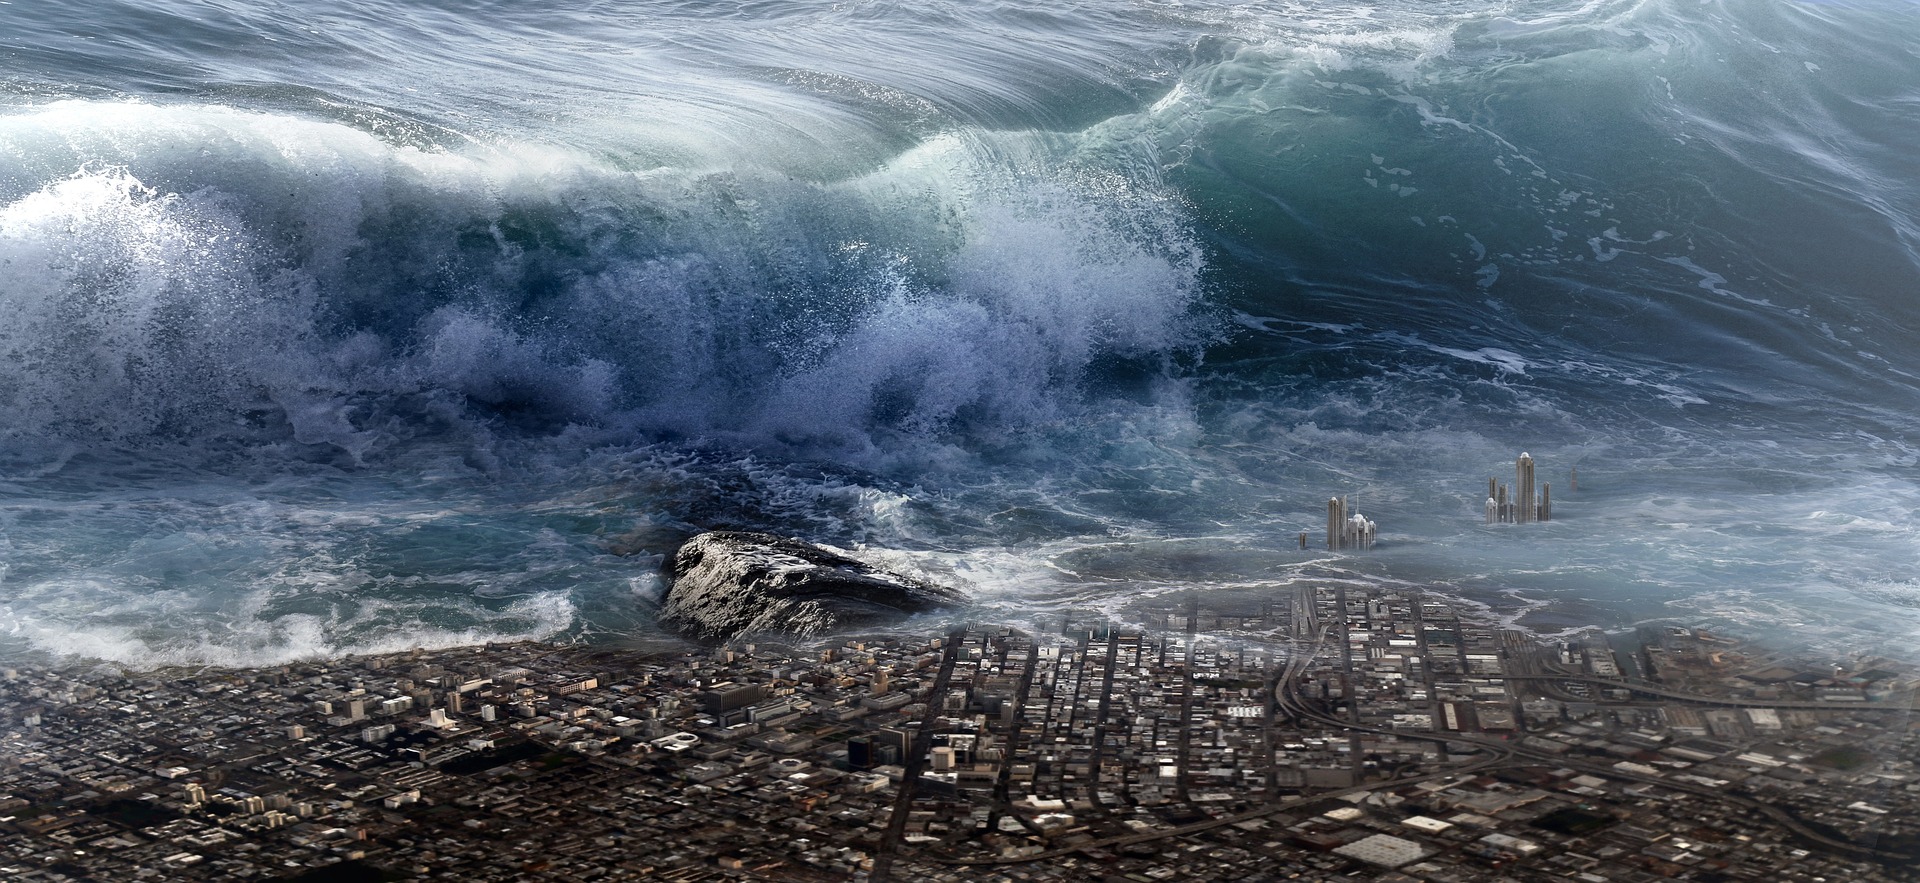 L’utilisation d’hydrophones avec une IA permet de détecter les tsunamis. © Stefan Keller de Pixabay